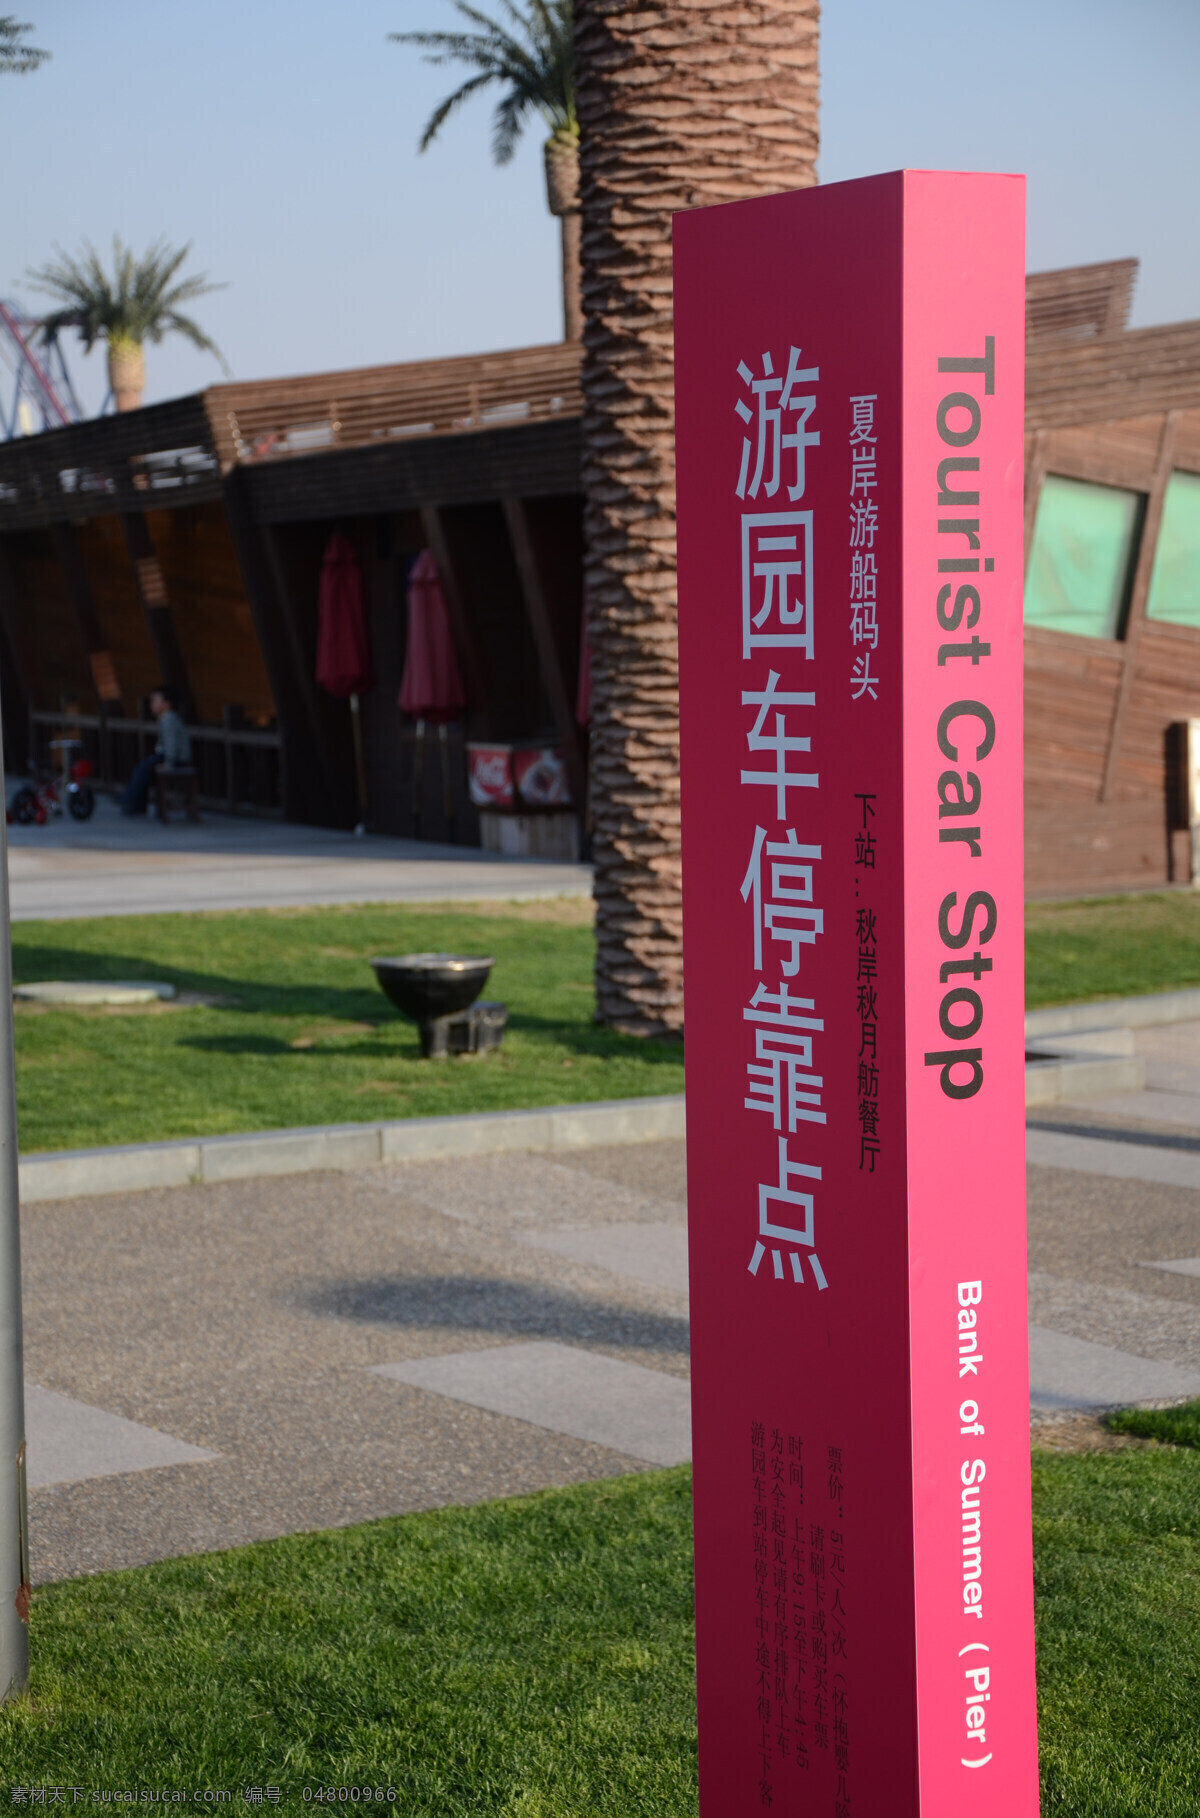 导 路牌 导向牌 建筑园林 园林建筑 指示牌 导路牌 月湖 上海 佘山 雕塑 公园 psd源文件